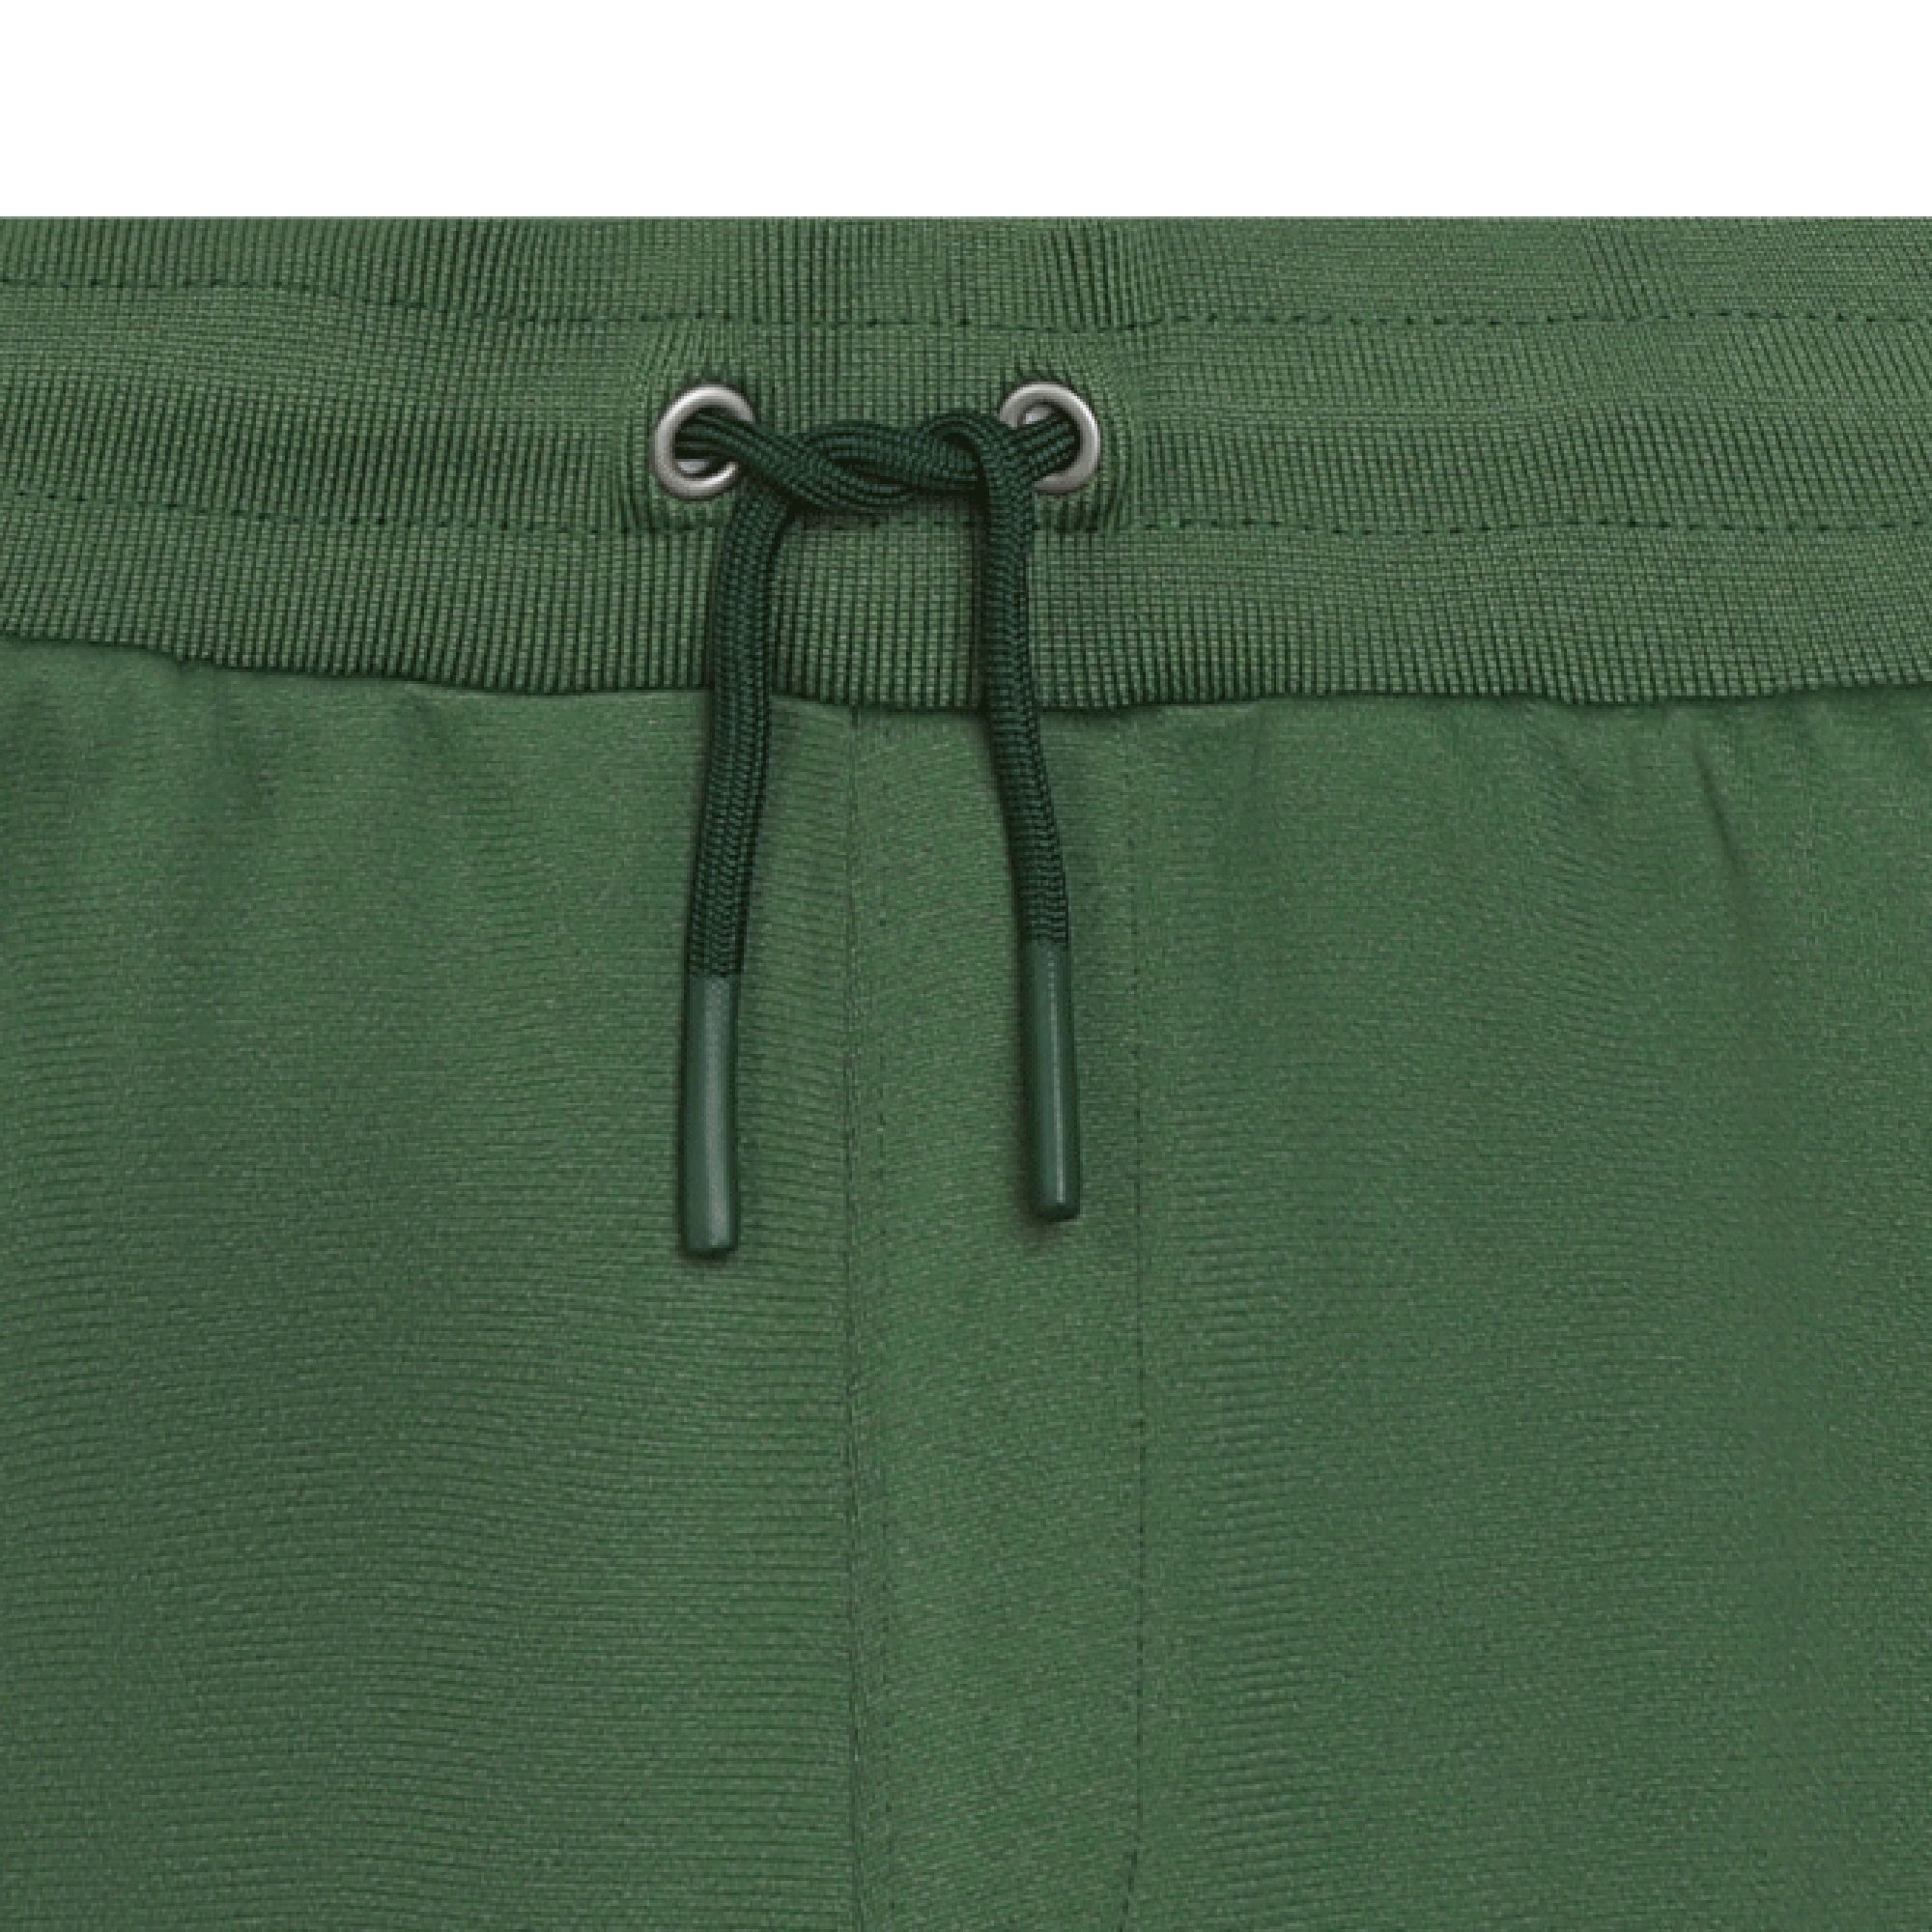 Shorts mit elastischem Bund BOSS Für JUNGE